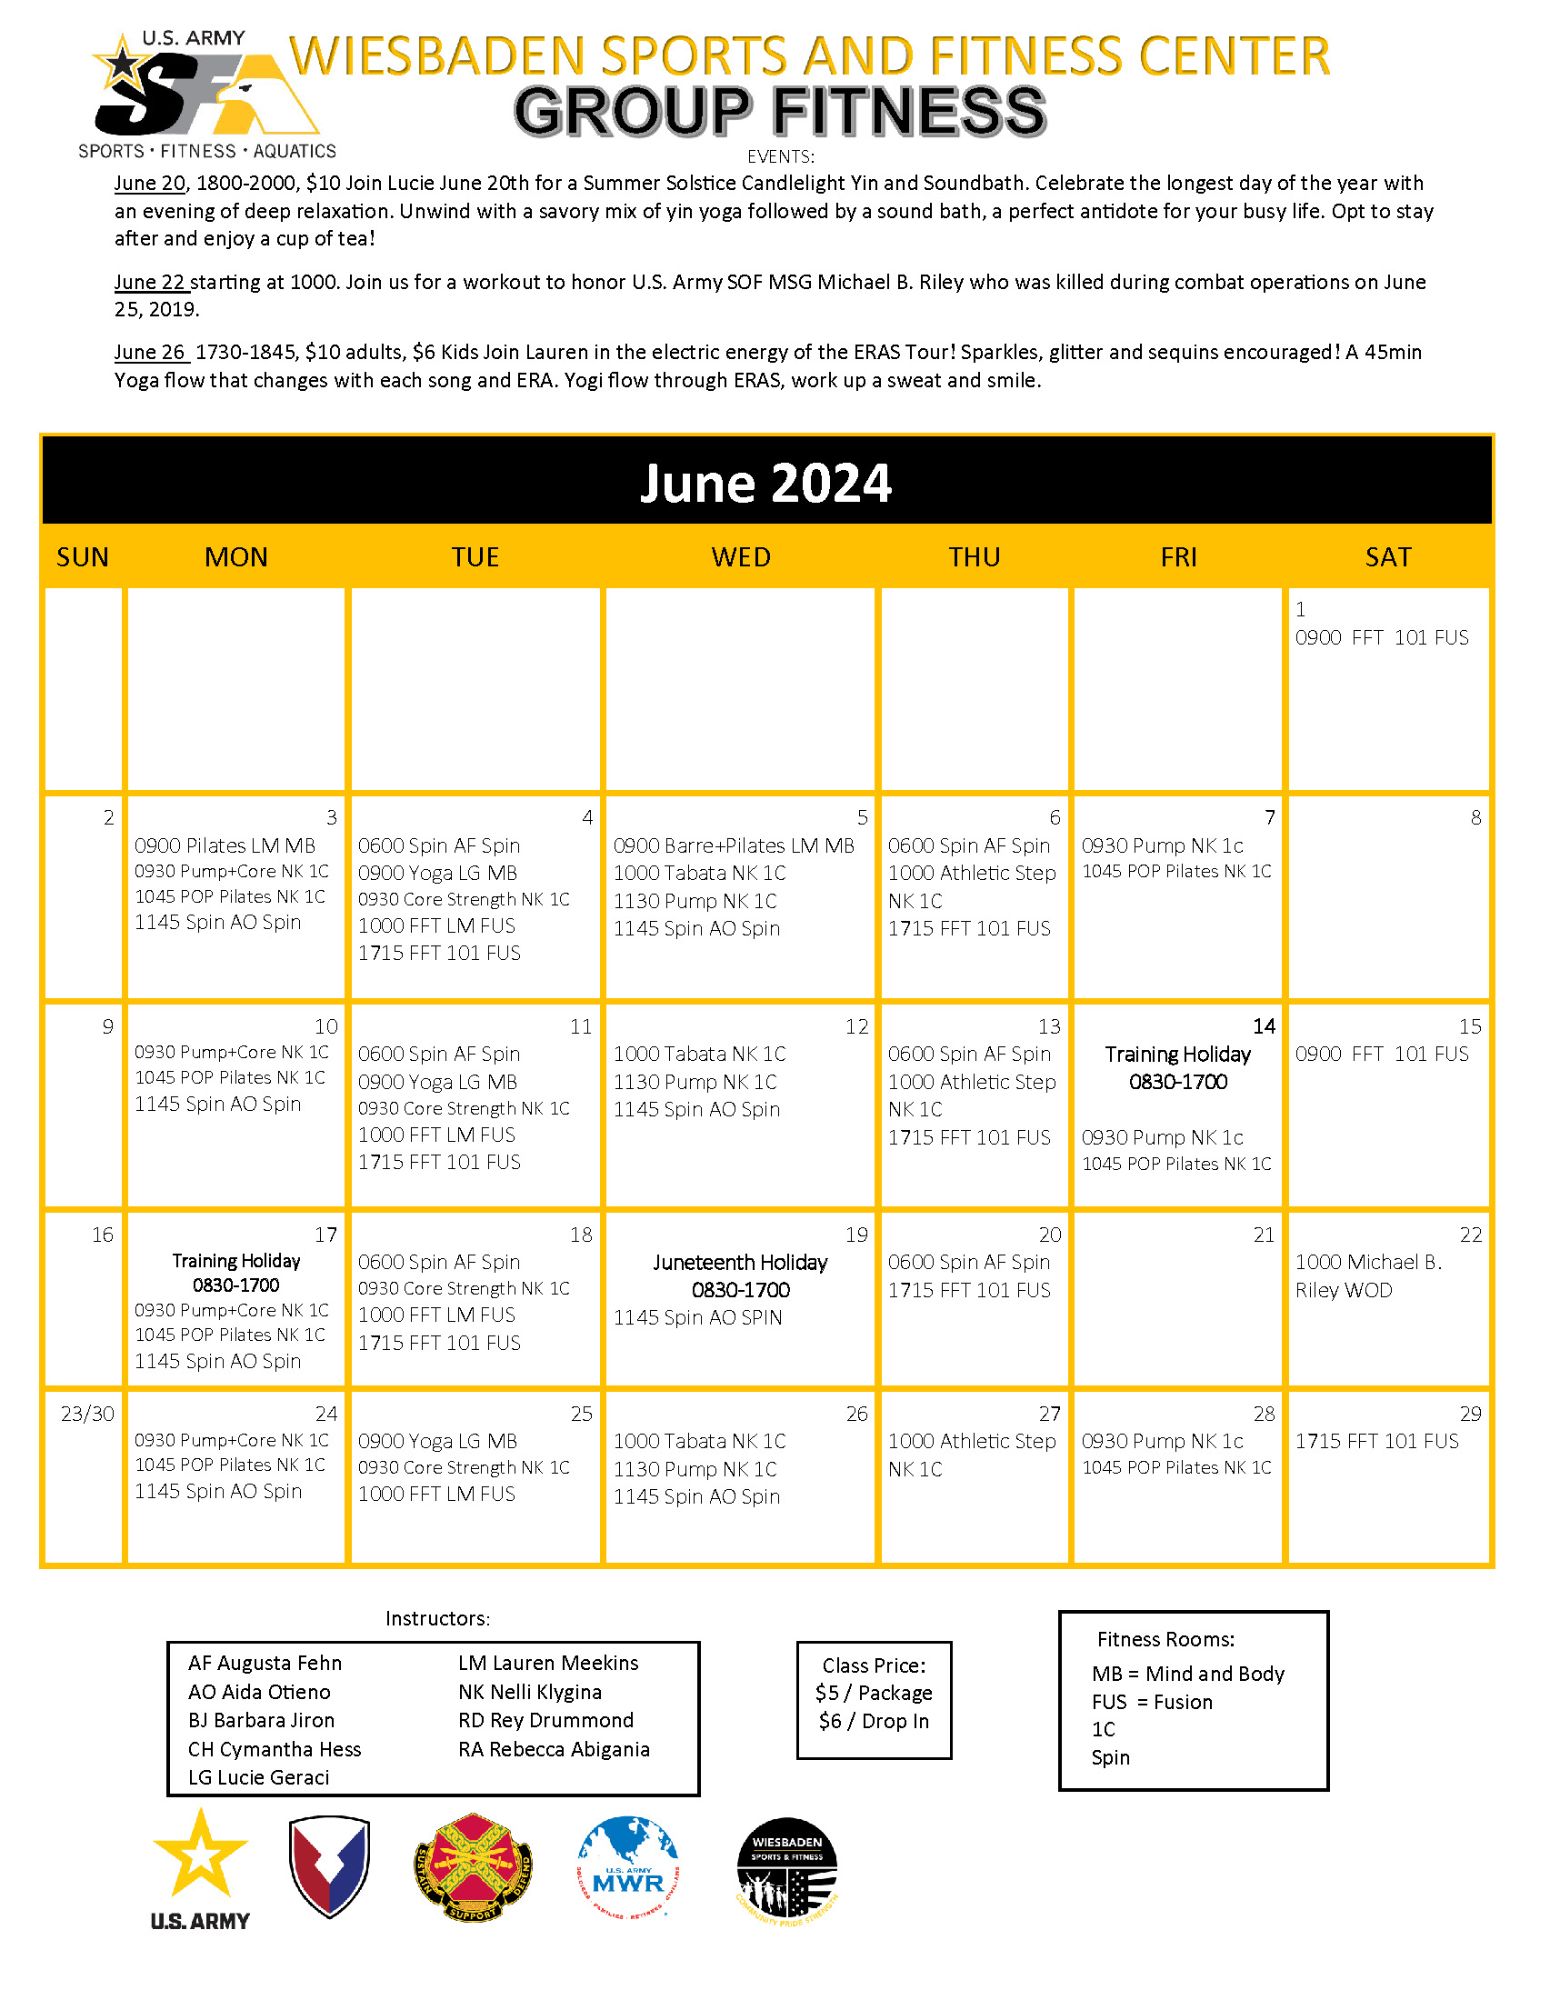 June 2024 Fitness Schedule 1.jpg